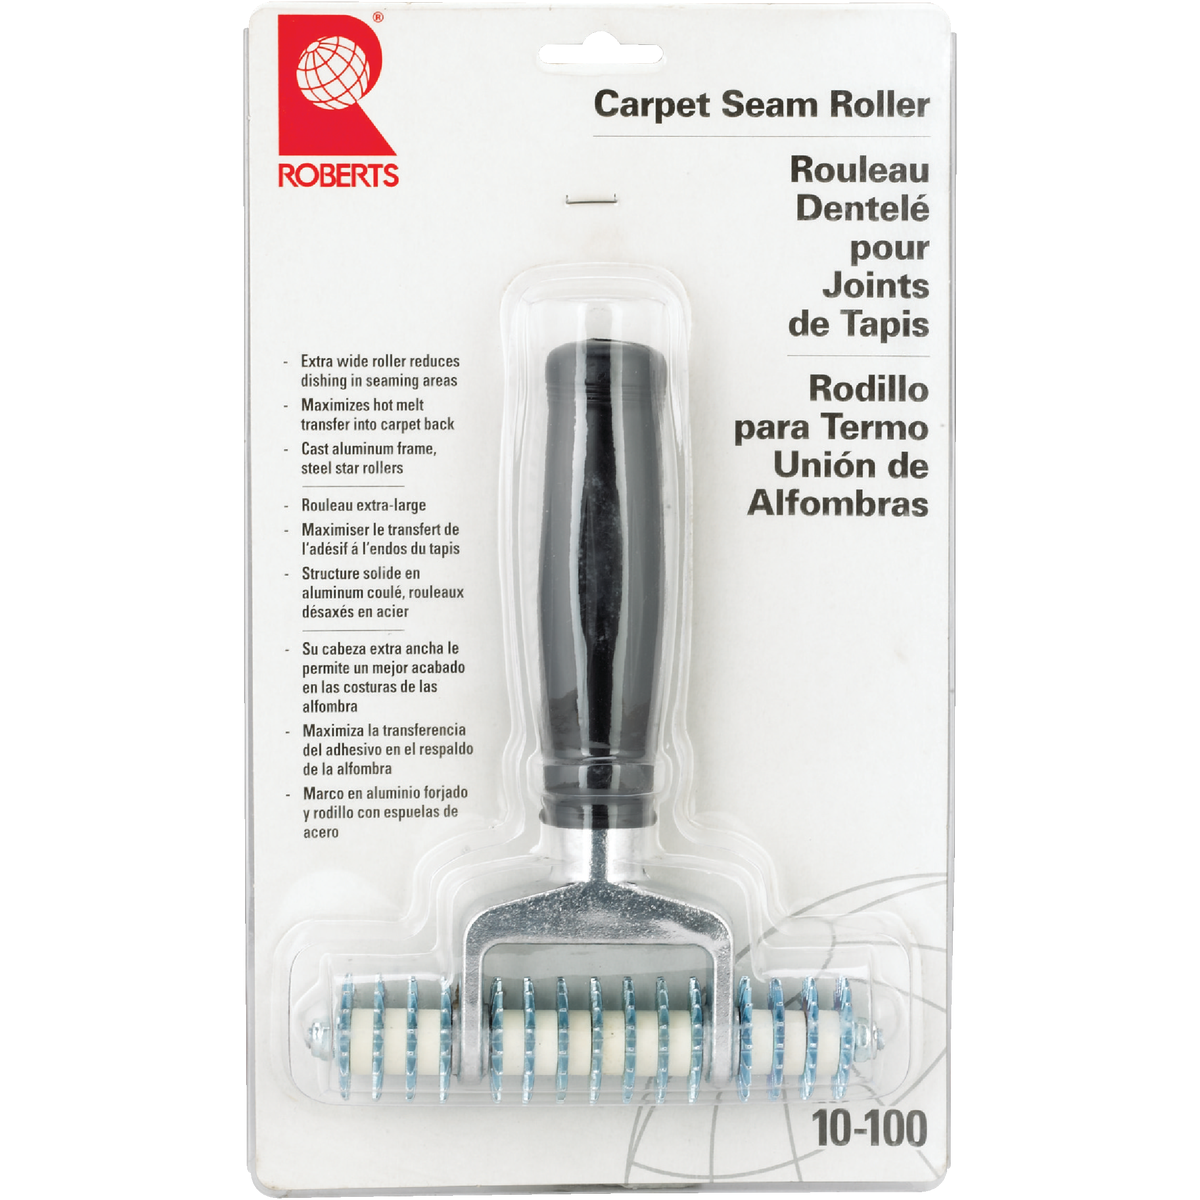 Carpet Seam Roller